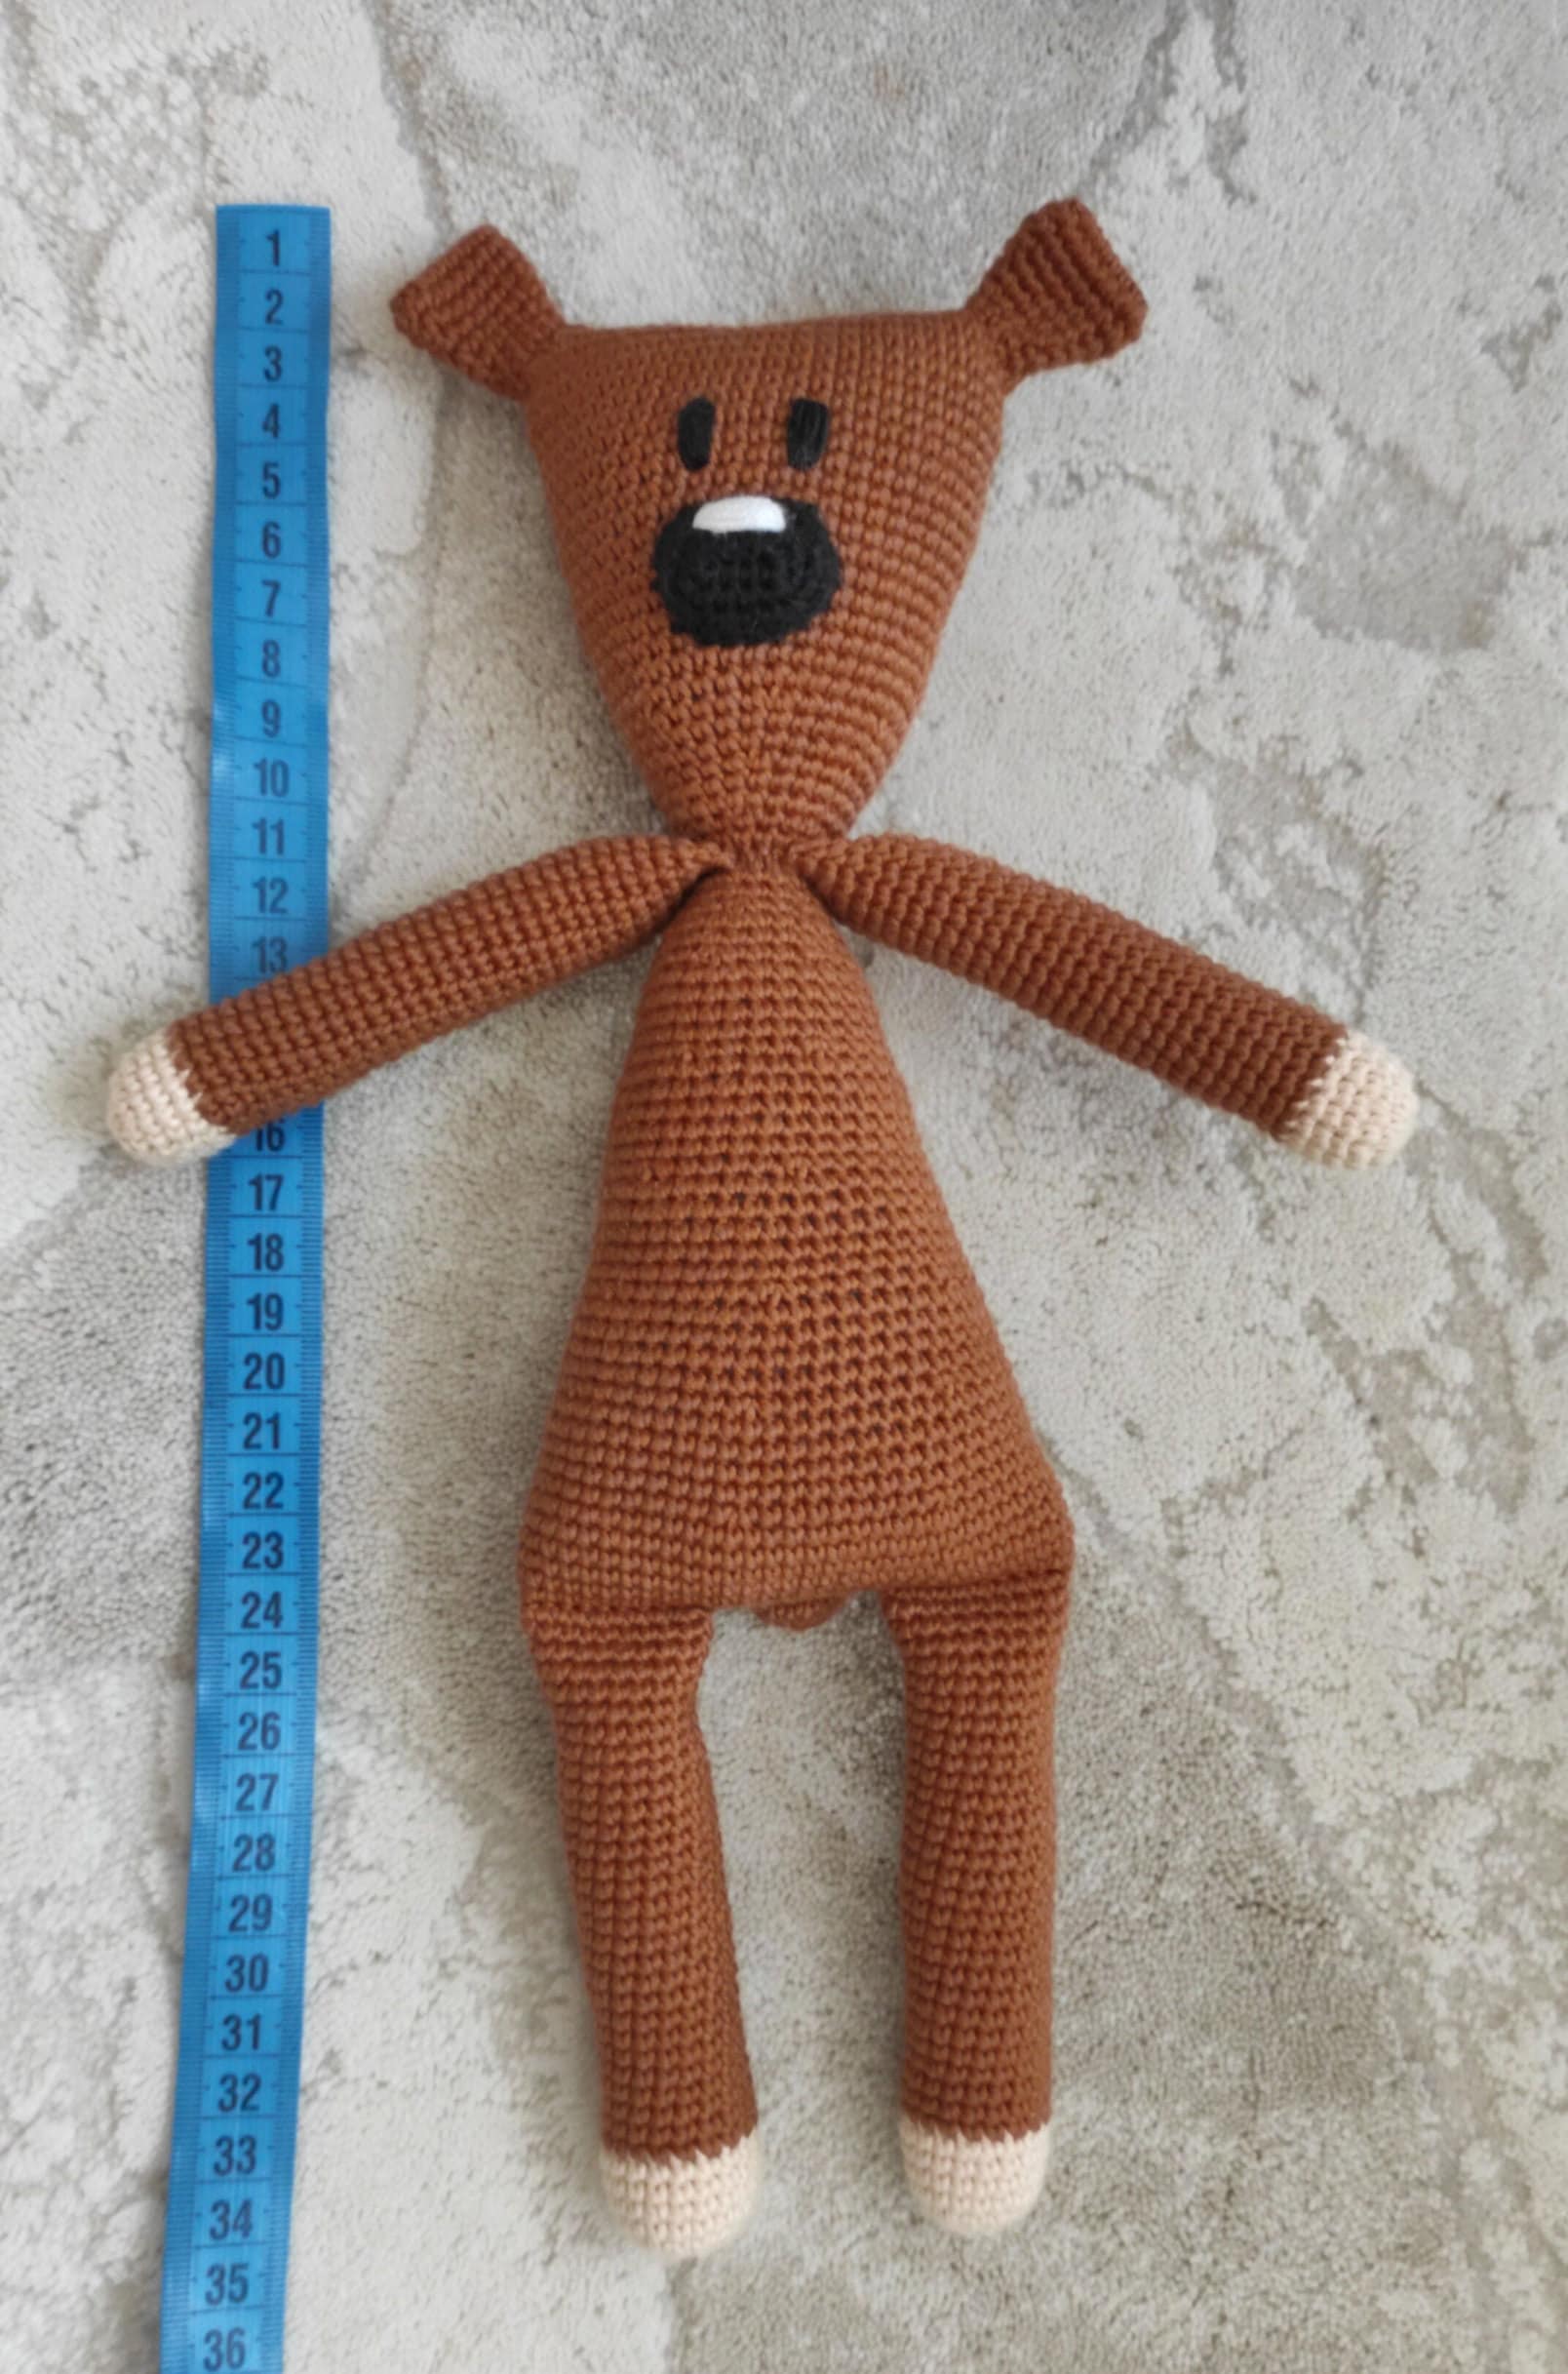 Mr Beans Teddy: Written Crochet Pattern eBook by Teenie Crochets - EPUB  Book